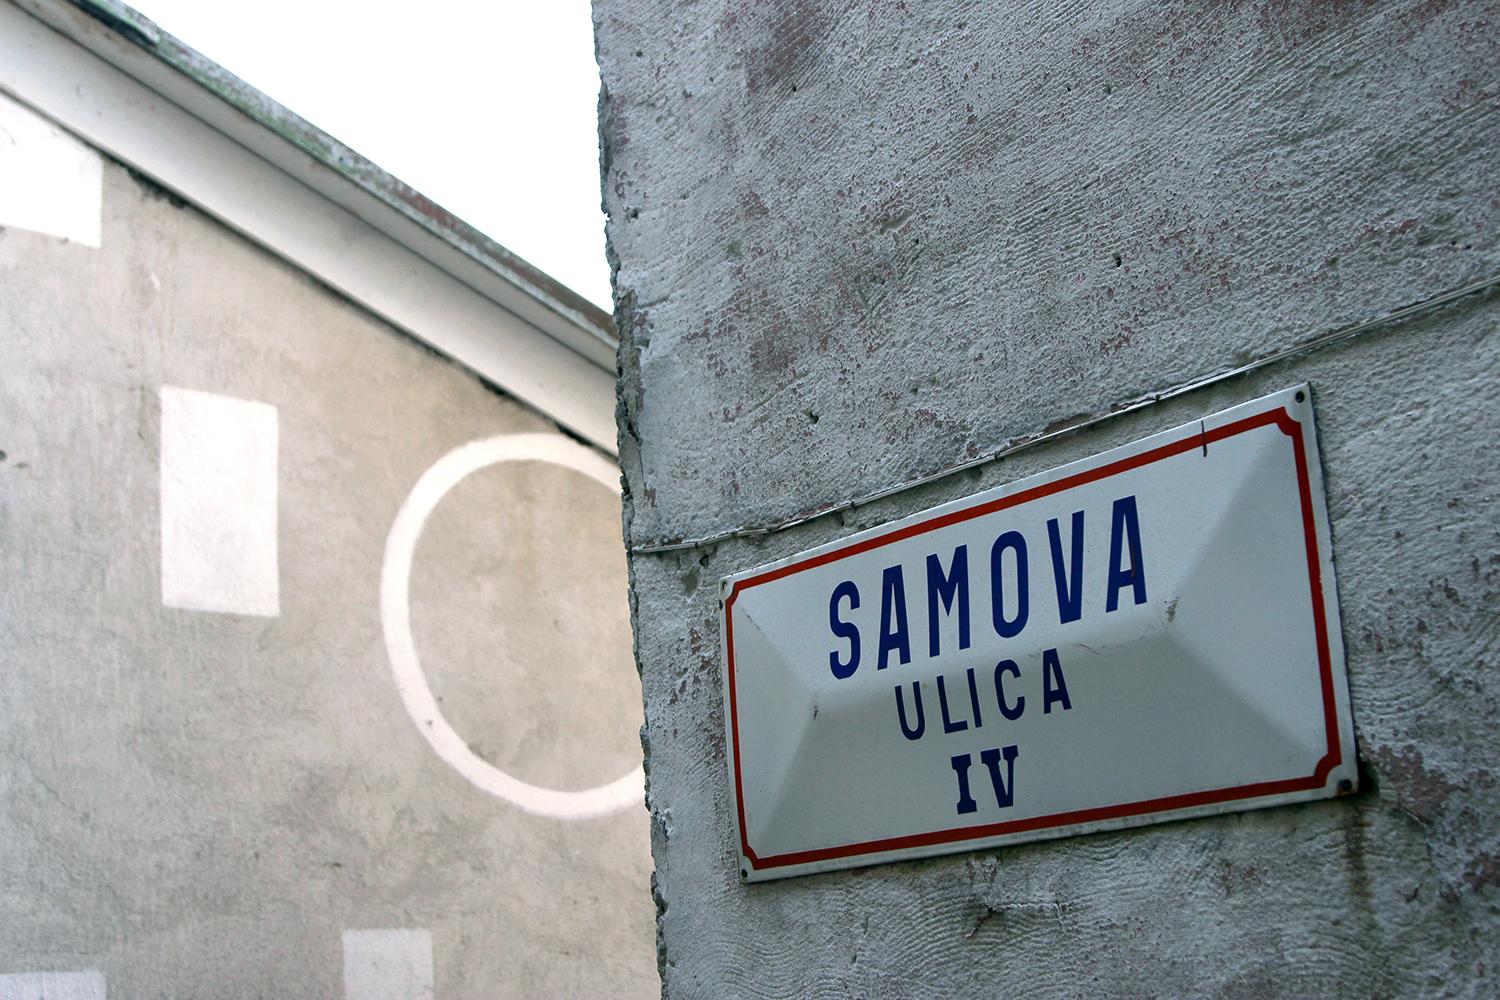 Tabuľka s nápisom Samova ulica upozorňuje na Samovu ríšu.